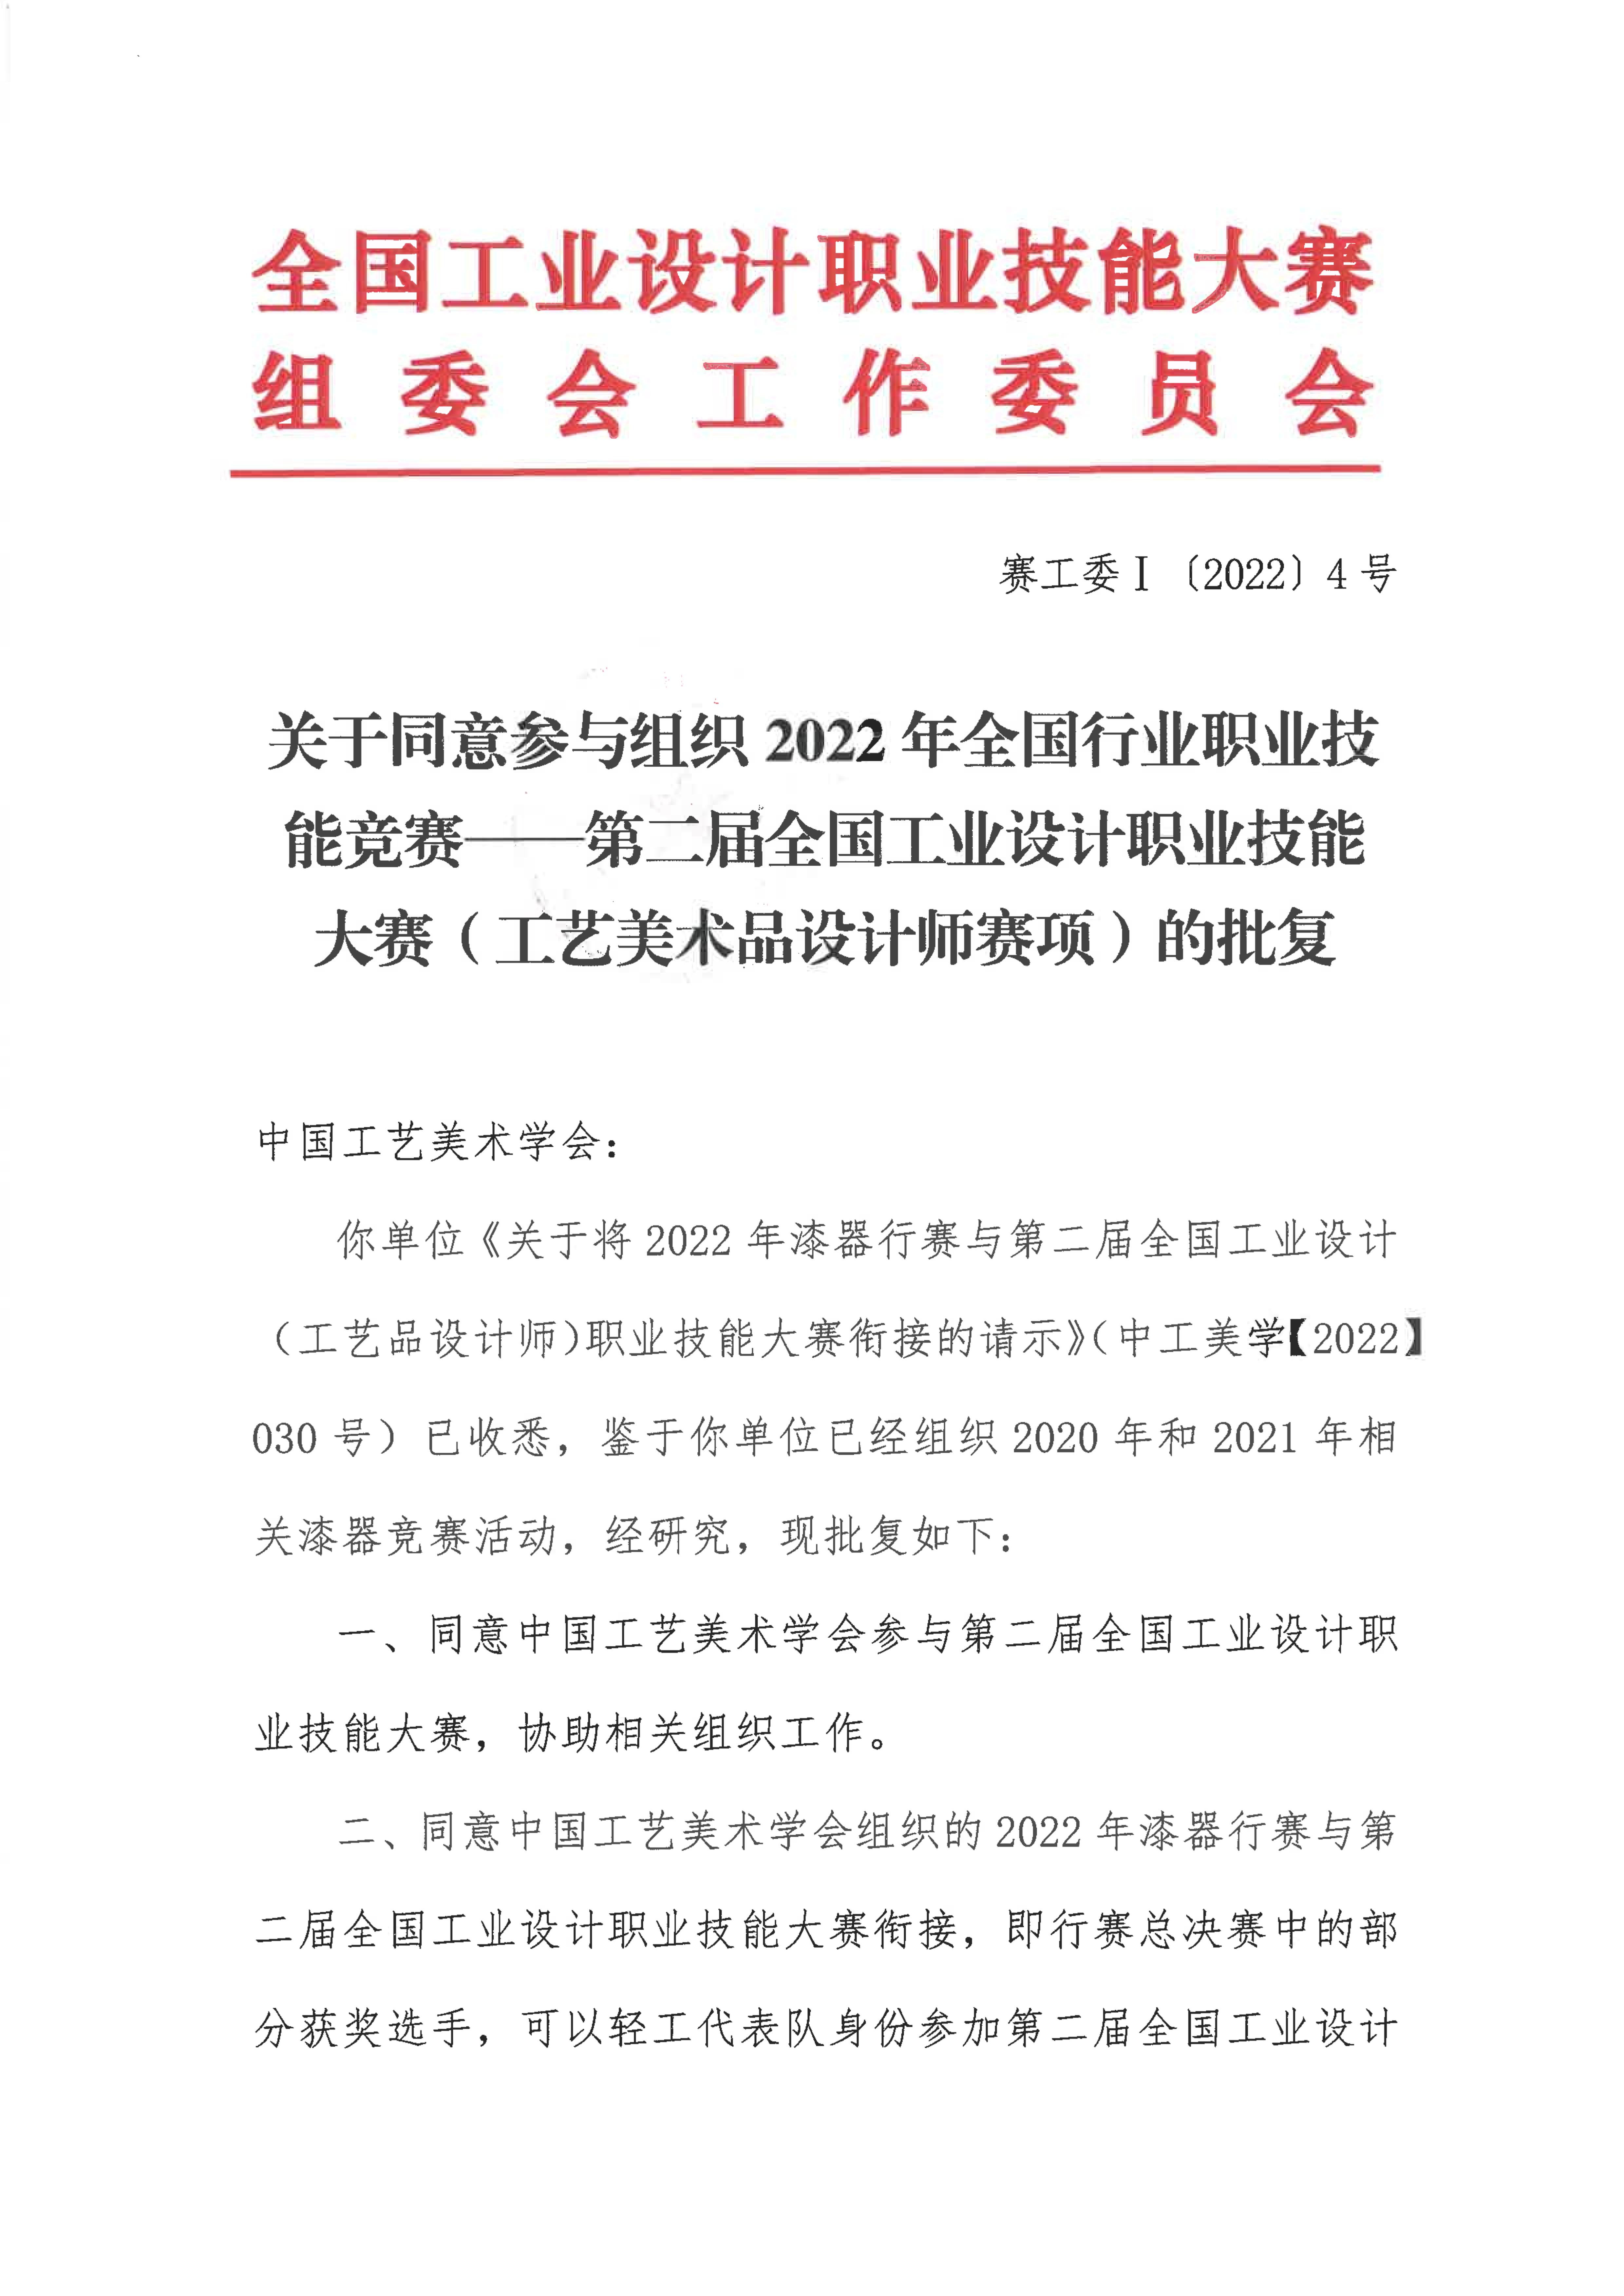 关于同意中国工艺美术学会参与组织第二届全国工业设计职业技能大赛的批复_00.jpg